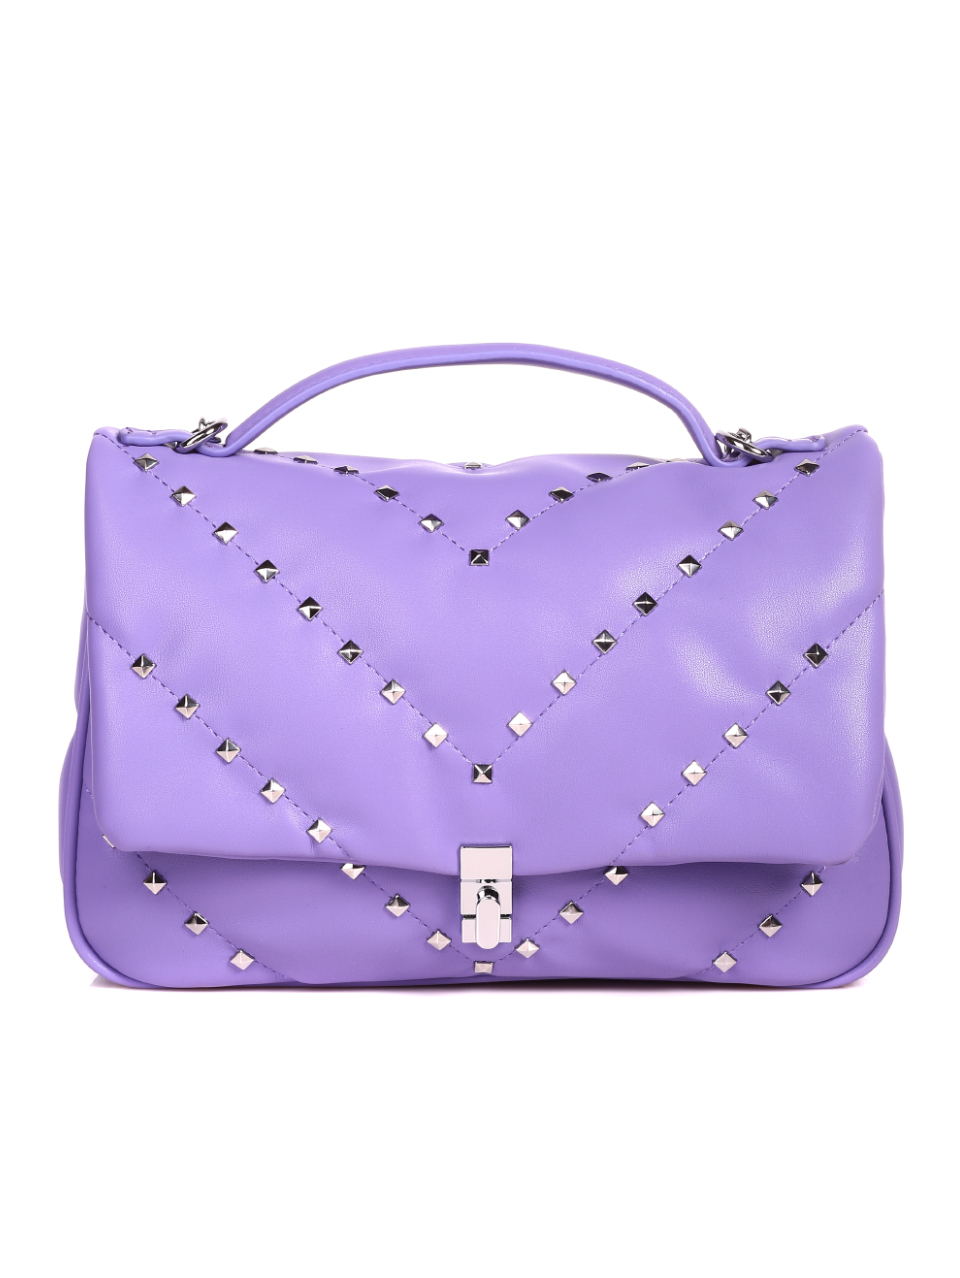 Елегантна дамска чанта в лилаво 9Q-21152 purple